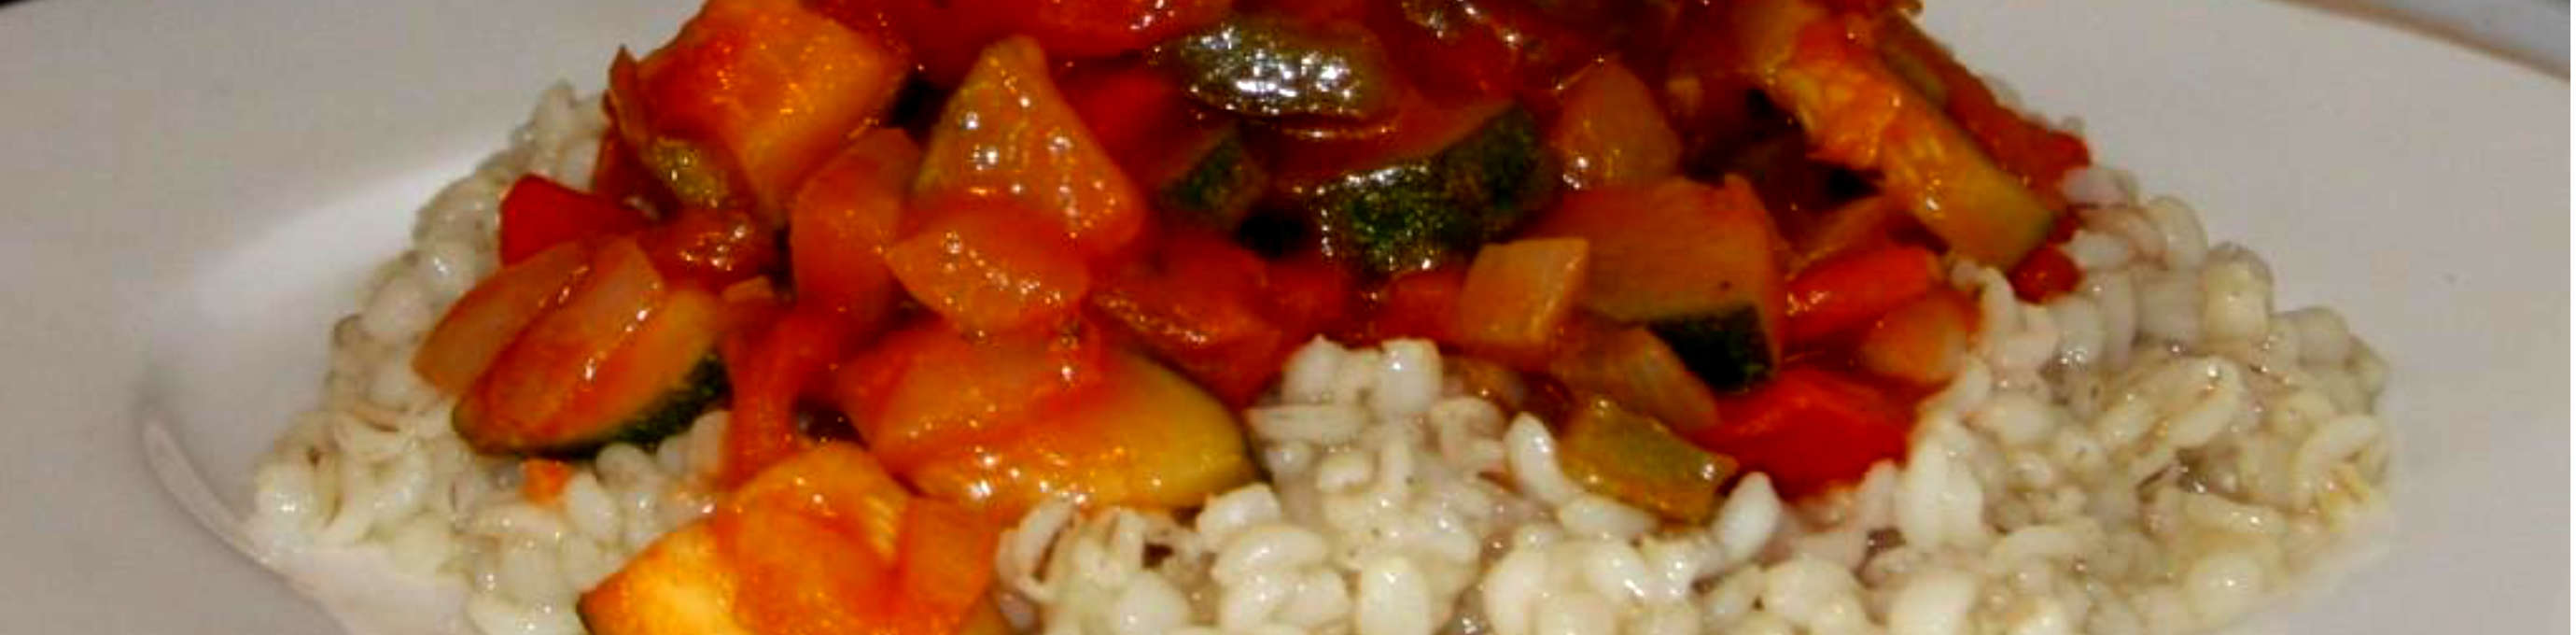 Ratatouille aus Zucchini, Aubergine, Tomaten und Paprika auf gekochter Gourmet Gerste von Gerstoni